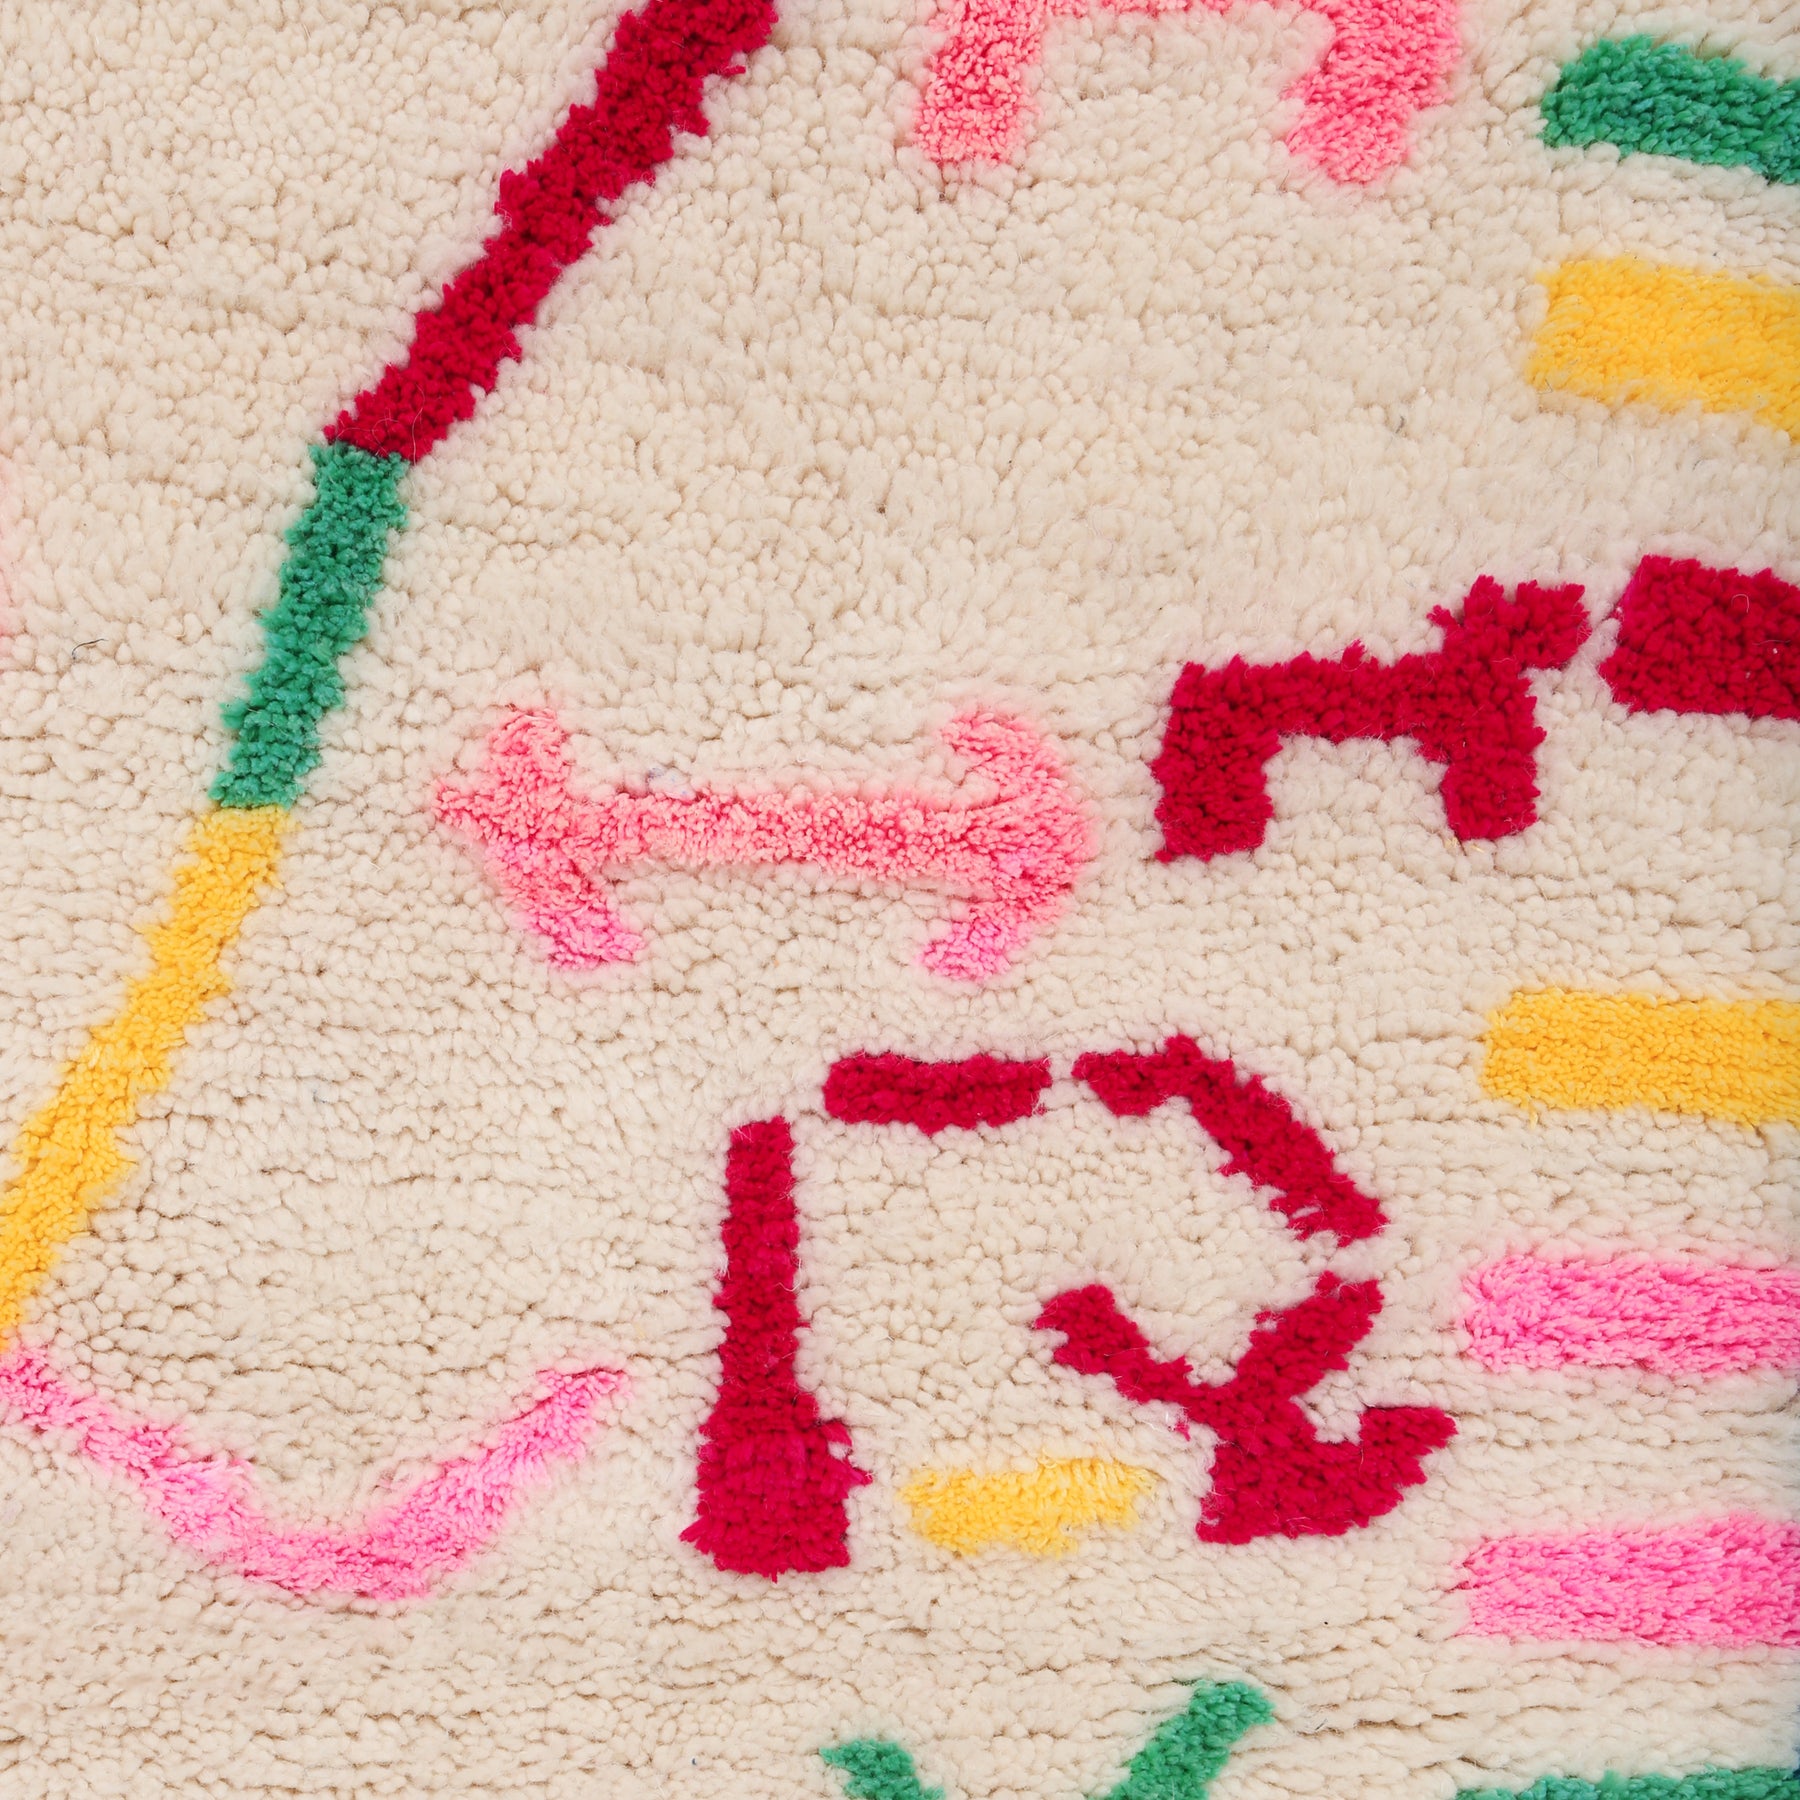 dettaglio dei simboli colorati rosso,rosa giallo e verde di un tappeto della regione di azilal